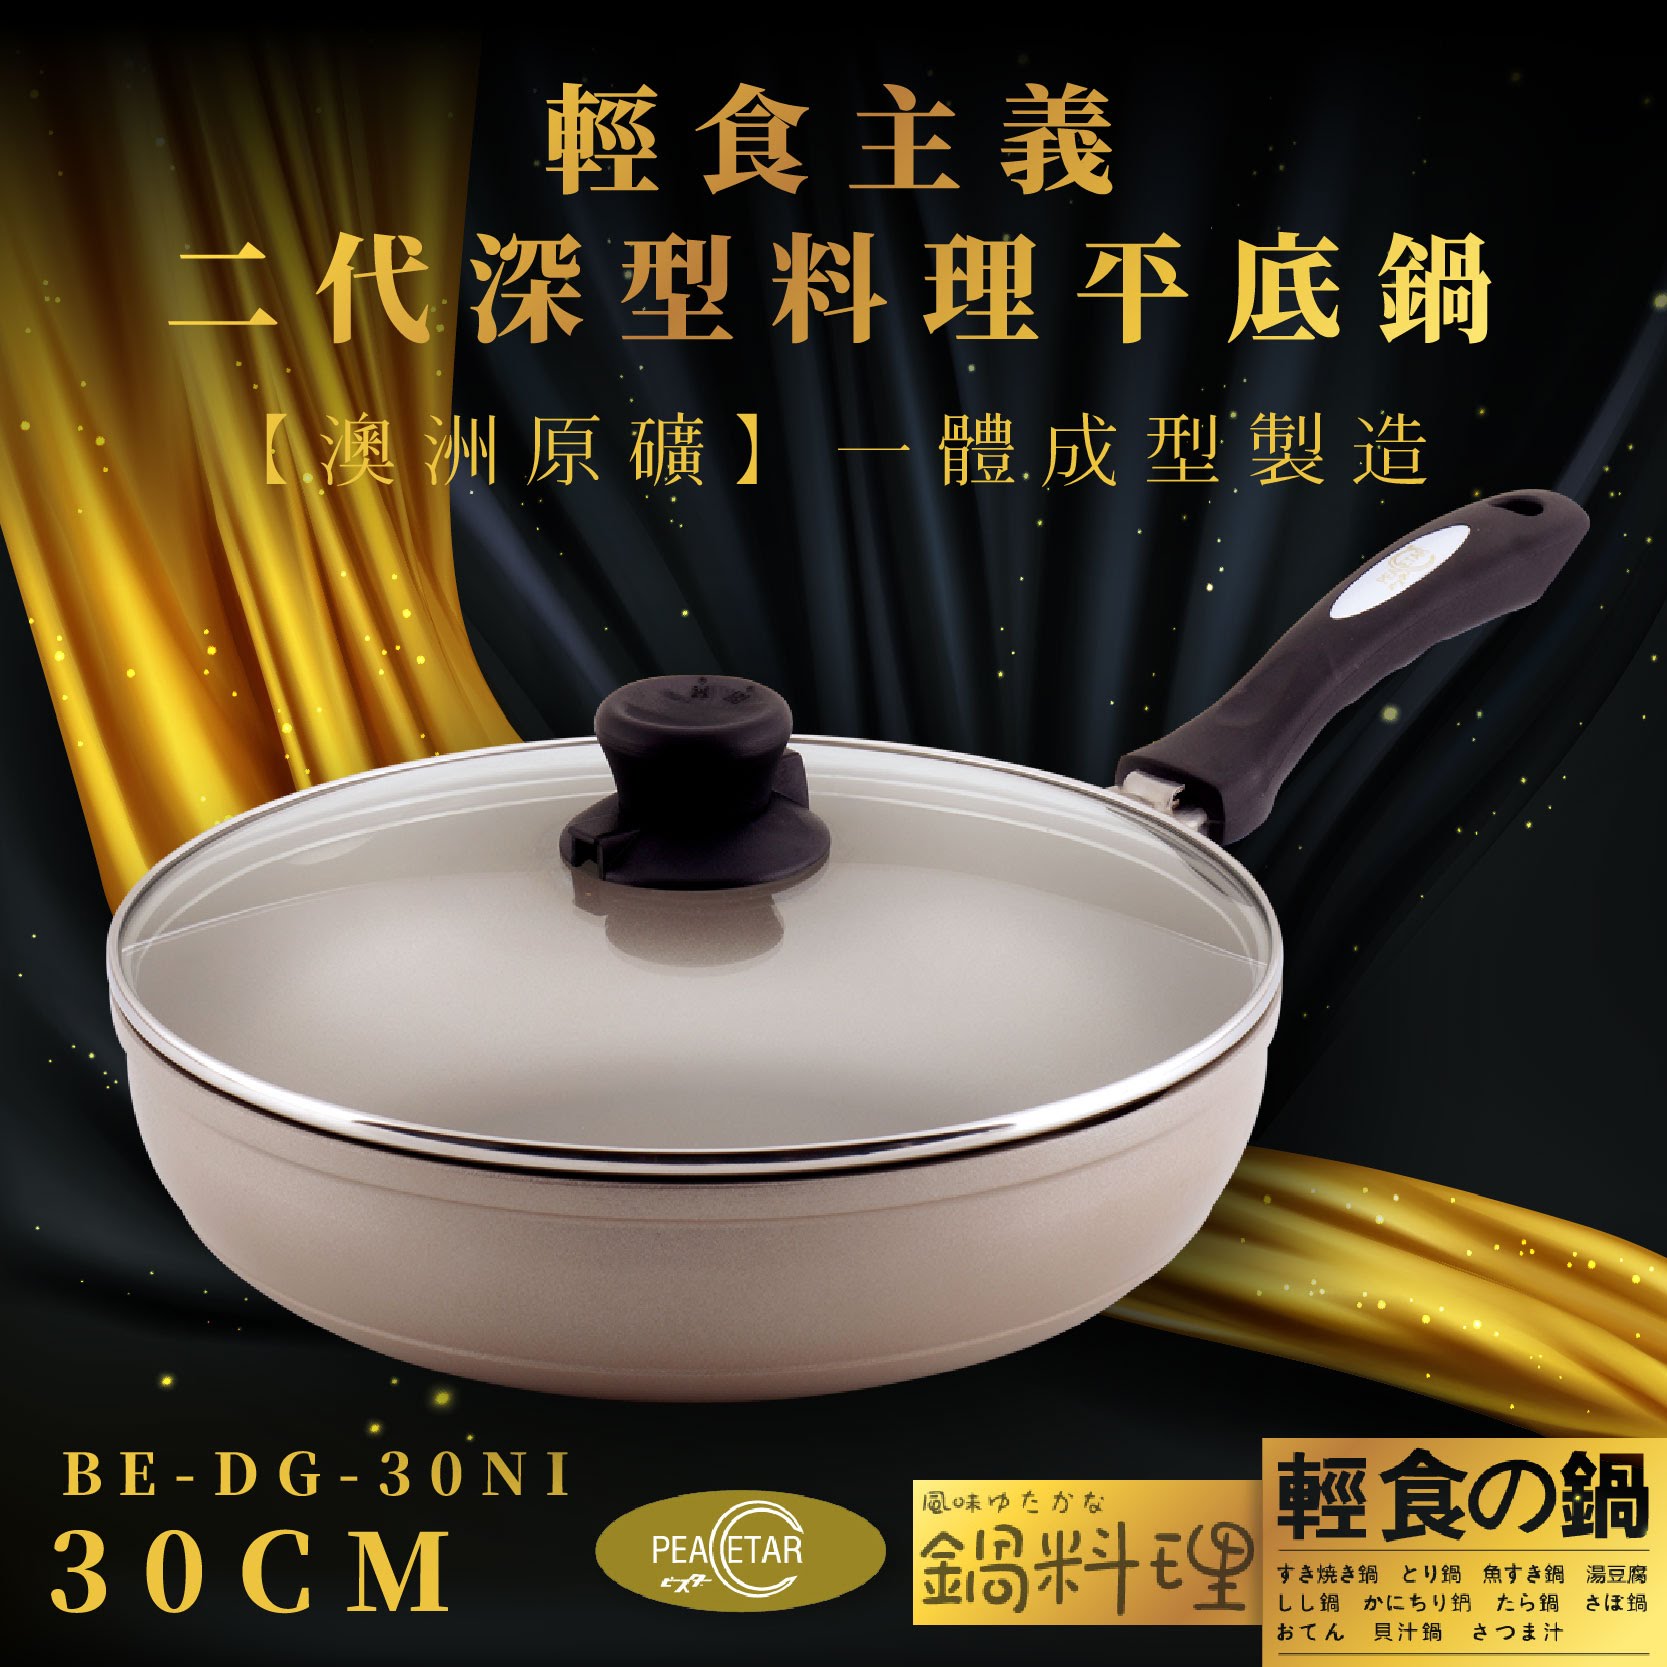 【必仕達Peacetar】輕食主義二代深形料理平底鍋(30cm) 日本設計 澳洲原礦 一體成型 BE-DG-30NI